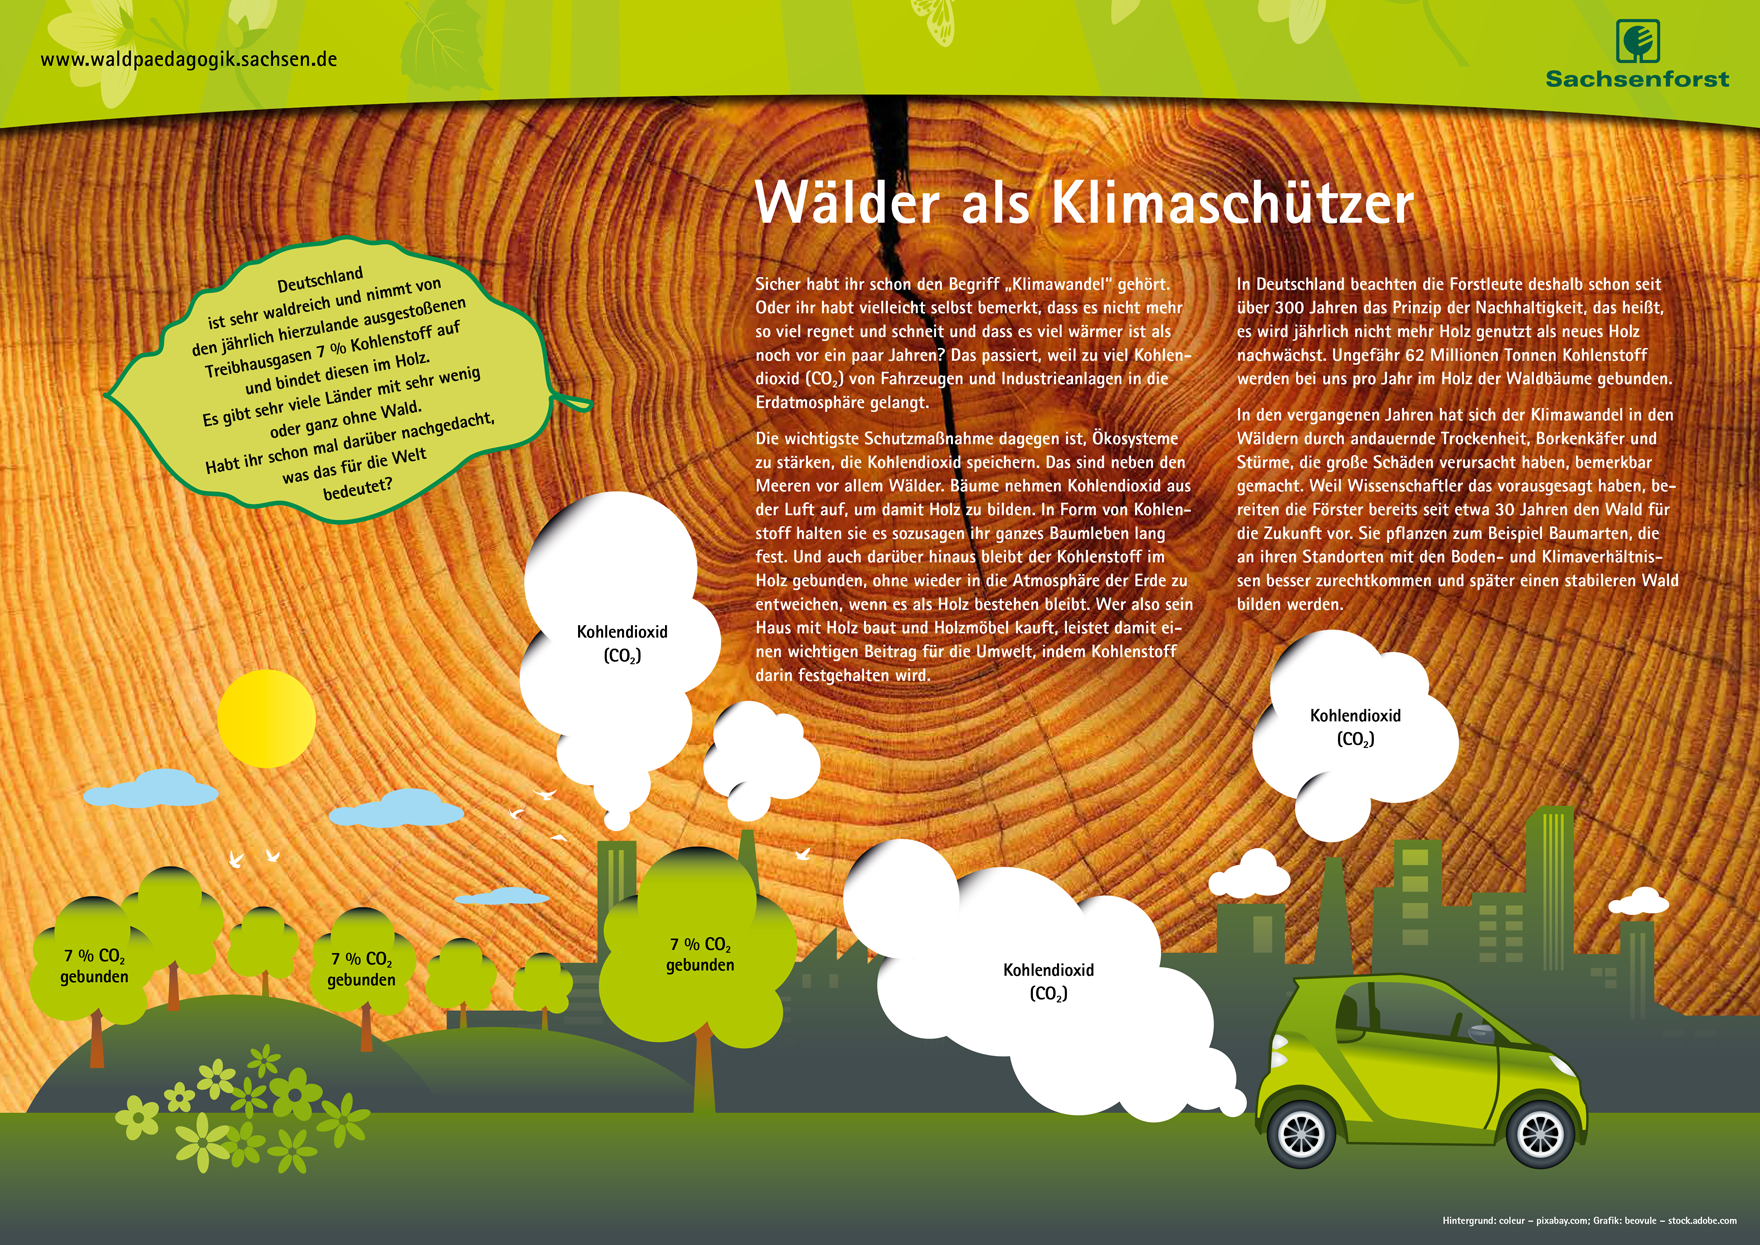 Grafik zum Thema Wald und Klimaschutz